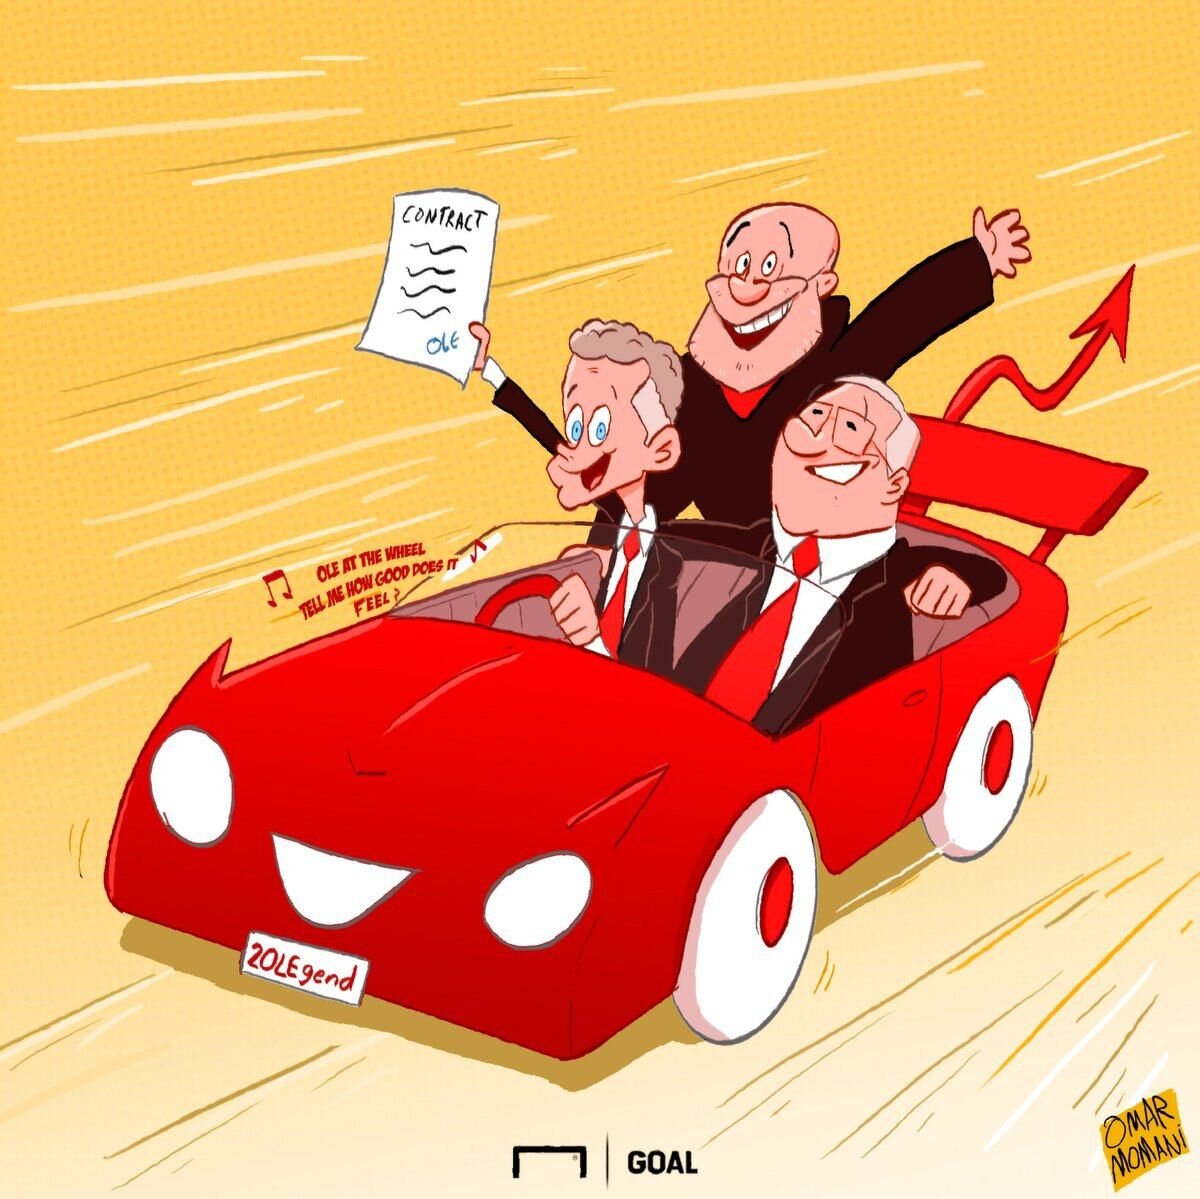 Уле-Гуннар Сульшер утвержден главным тренером «Манчестер Юнайтед». Контракт с красными дьяволами рассчитан на 3 года.